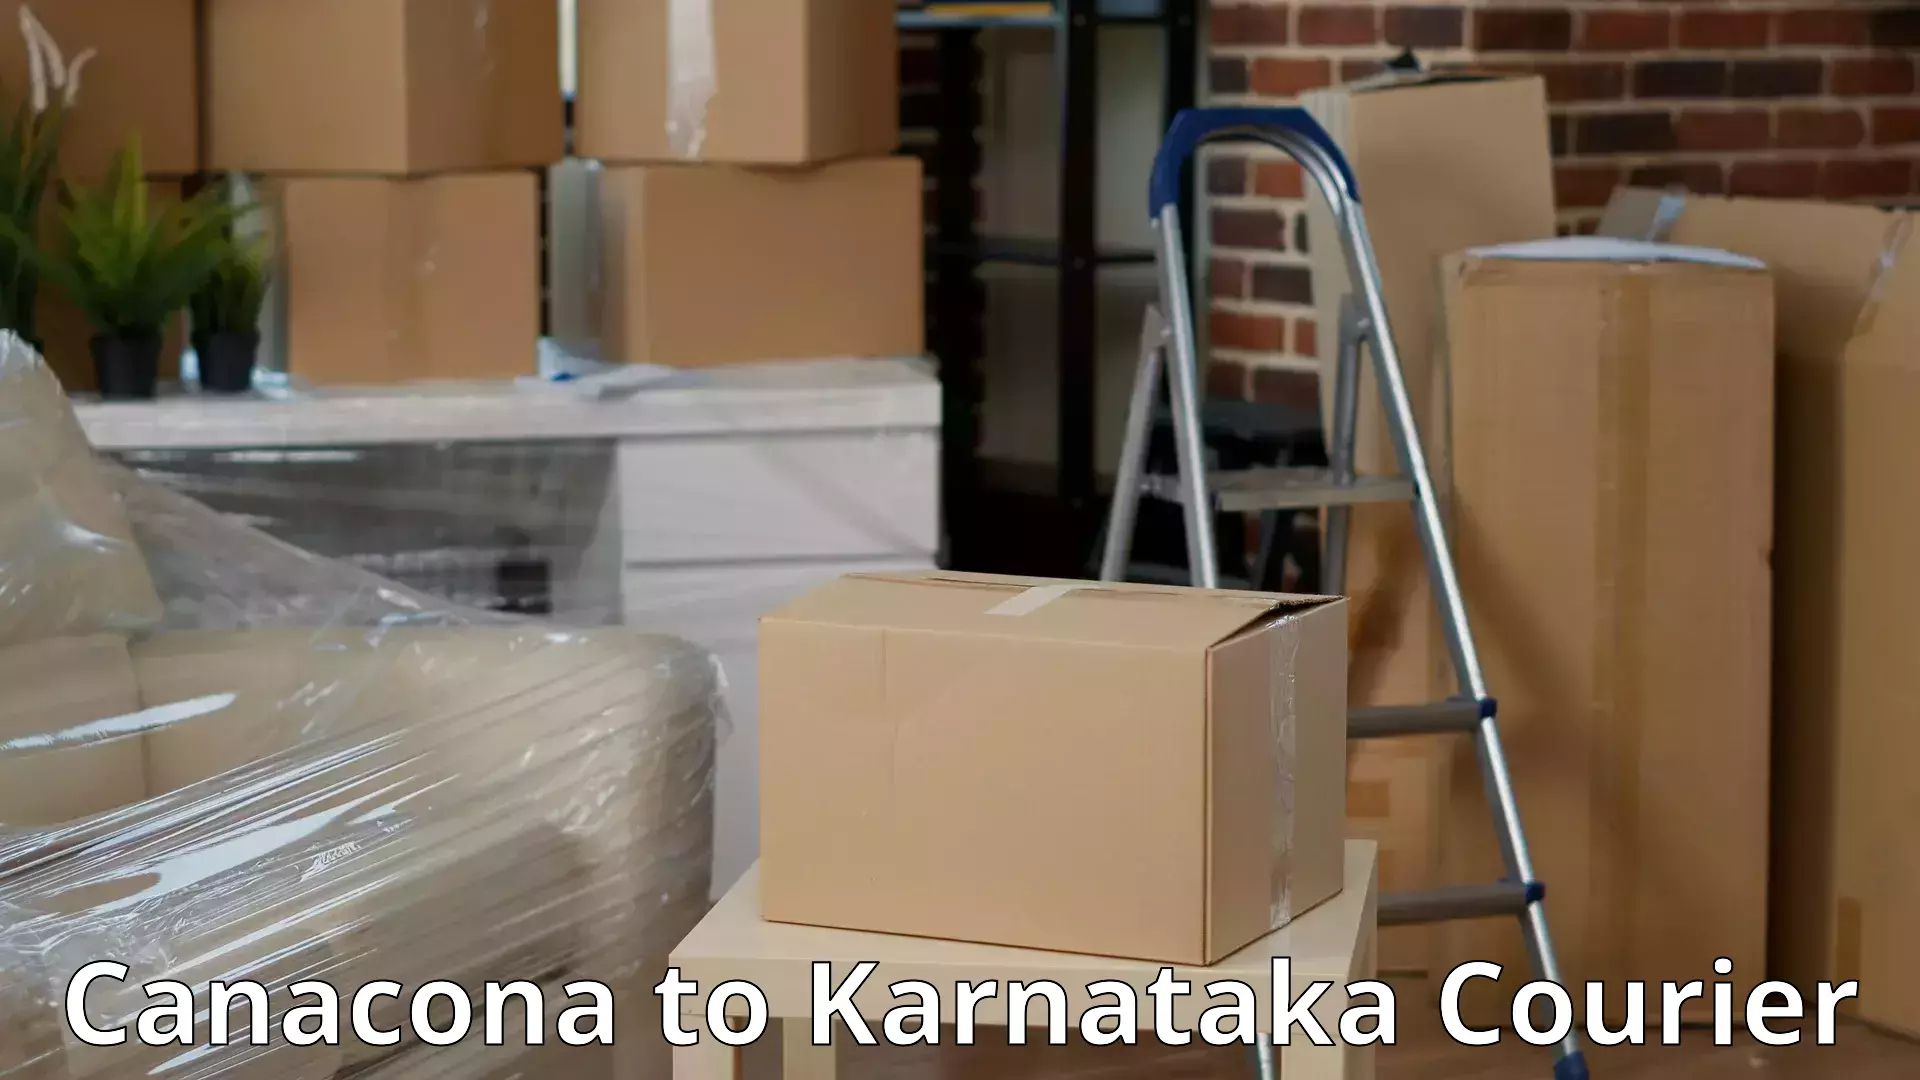 Full-service movers Canacona to Karnataka